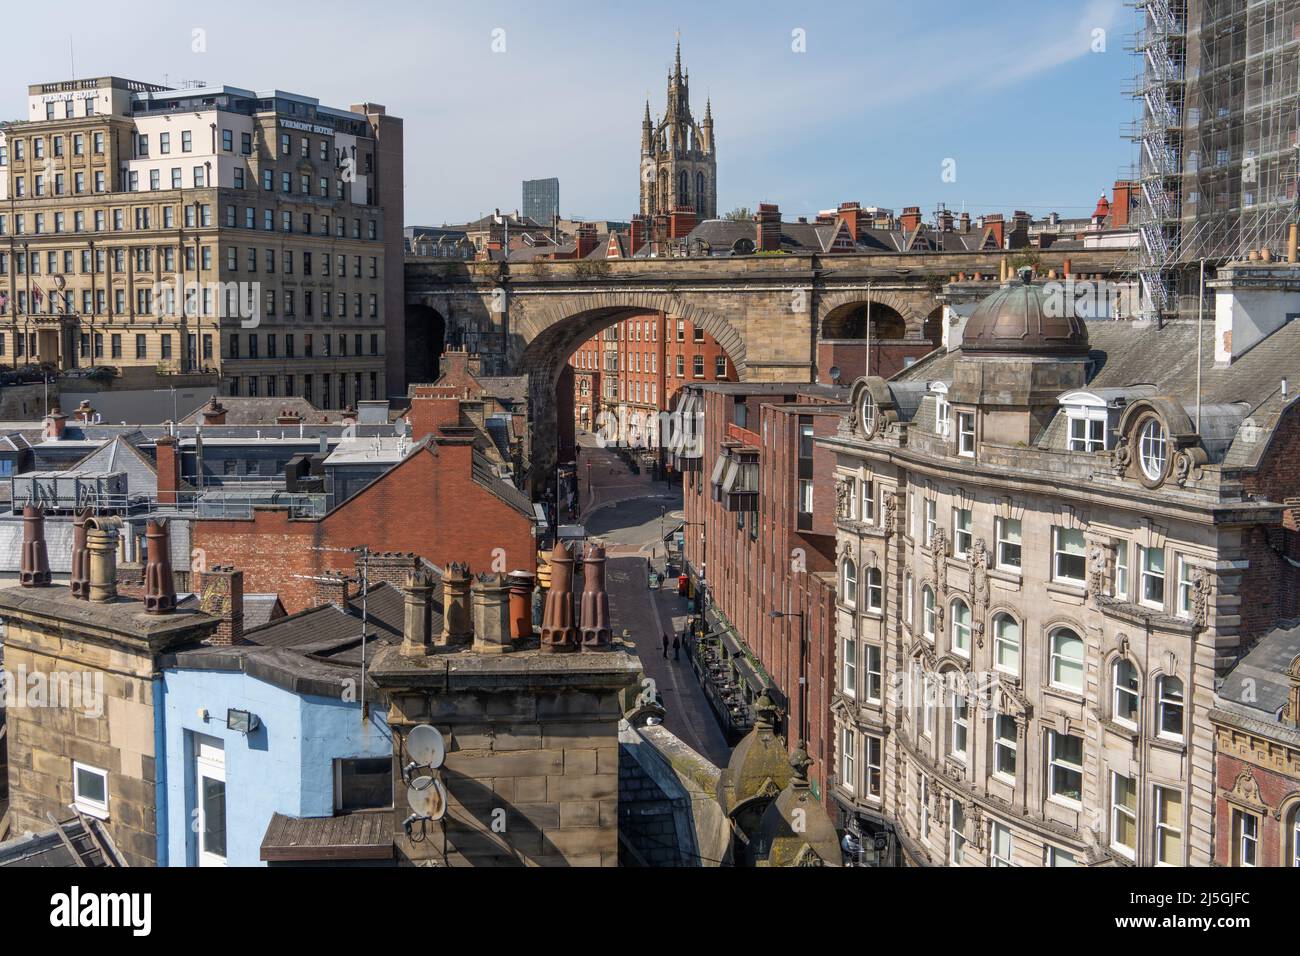 Newcastle upon Tyne, Stadtbild mit Schornsteinköpfen, aufgenommen von der Tyne Bridge, mit Sehenswürdigkeiten wie der Newcastle Cathedral. Stockfoto